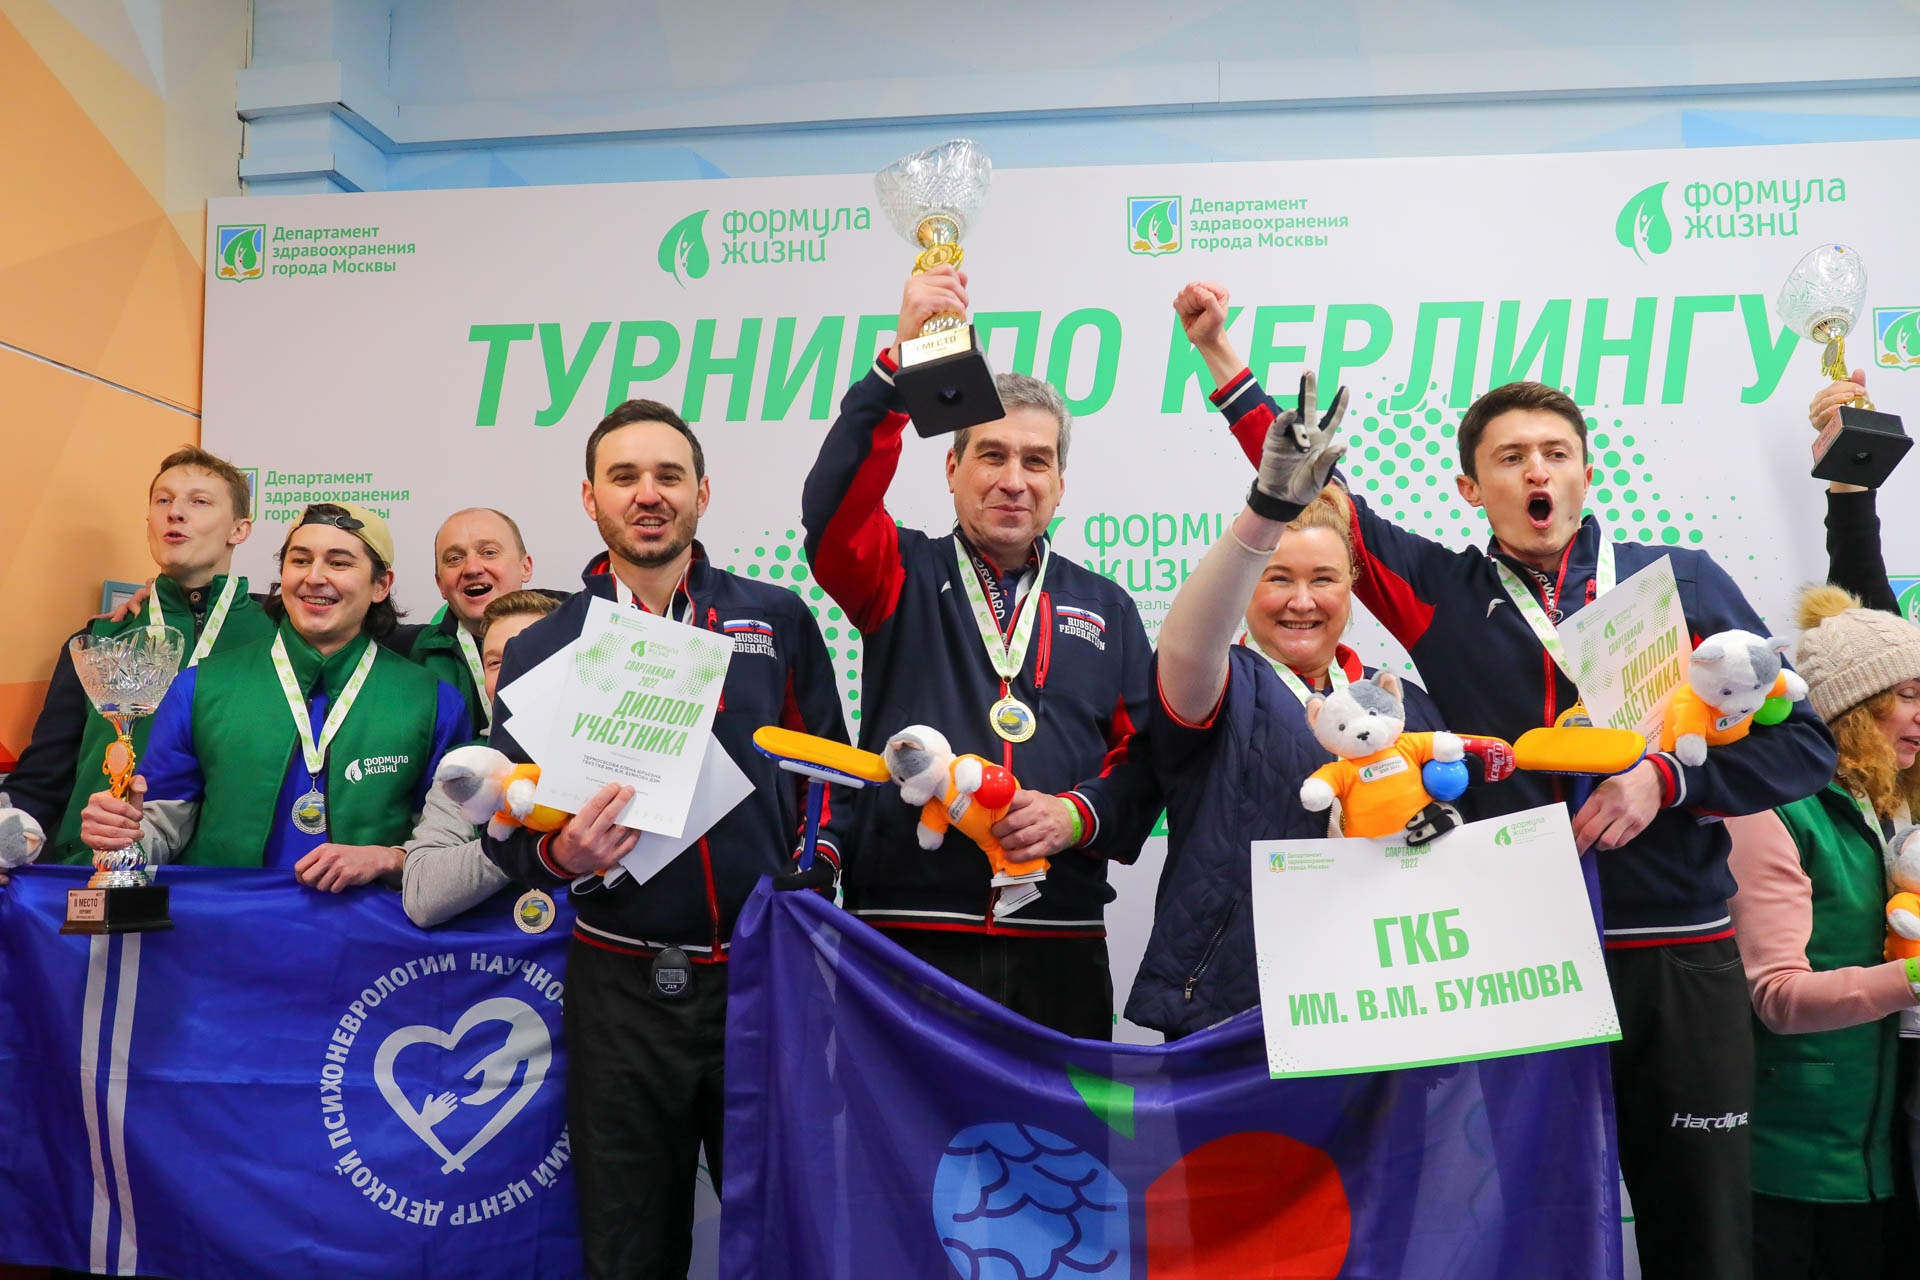 Команда больницы Буянова заняла первое место в турнире по керлингу